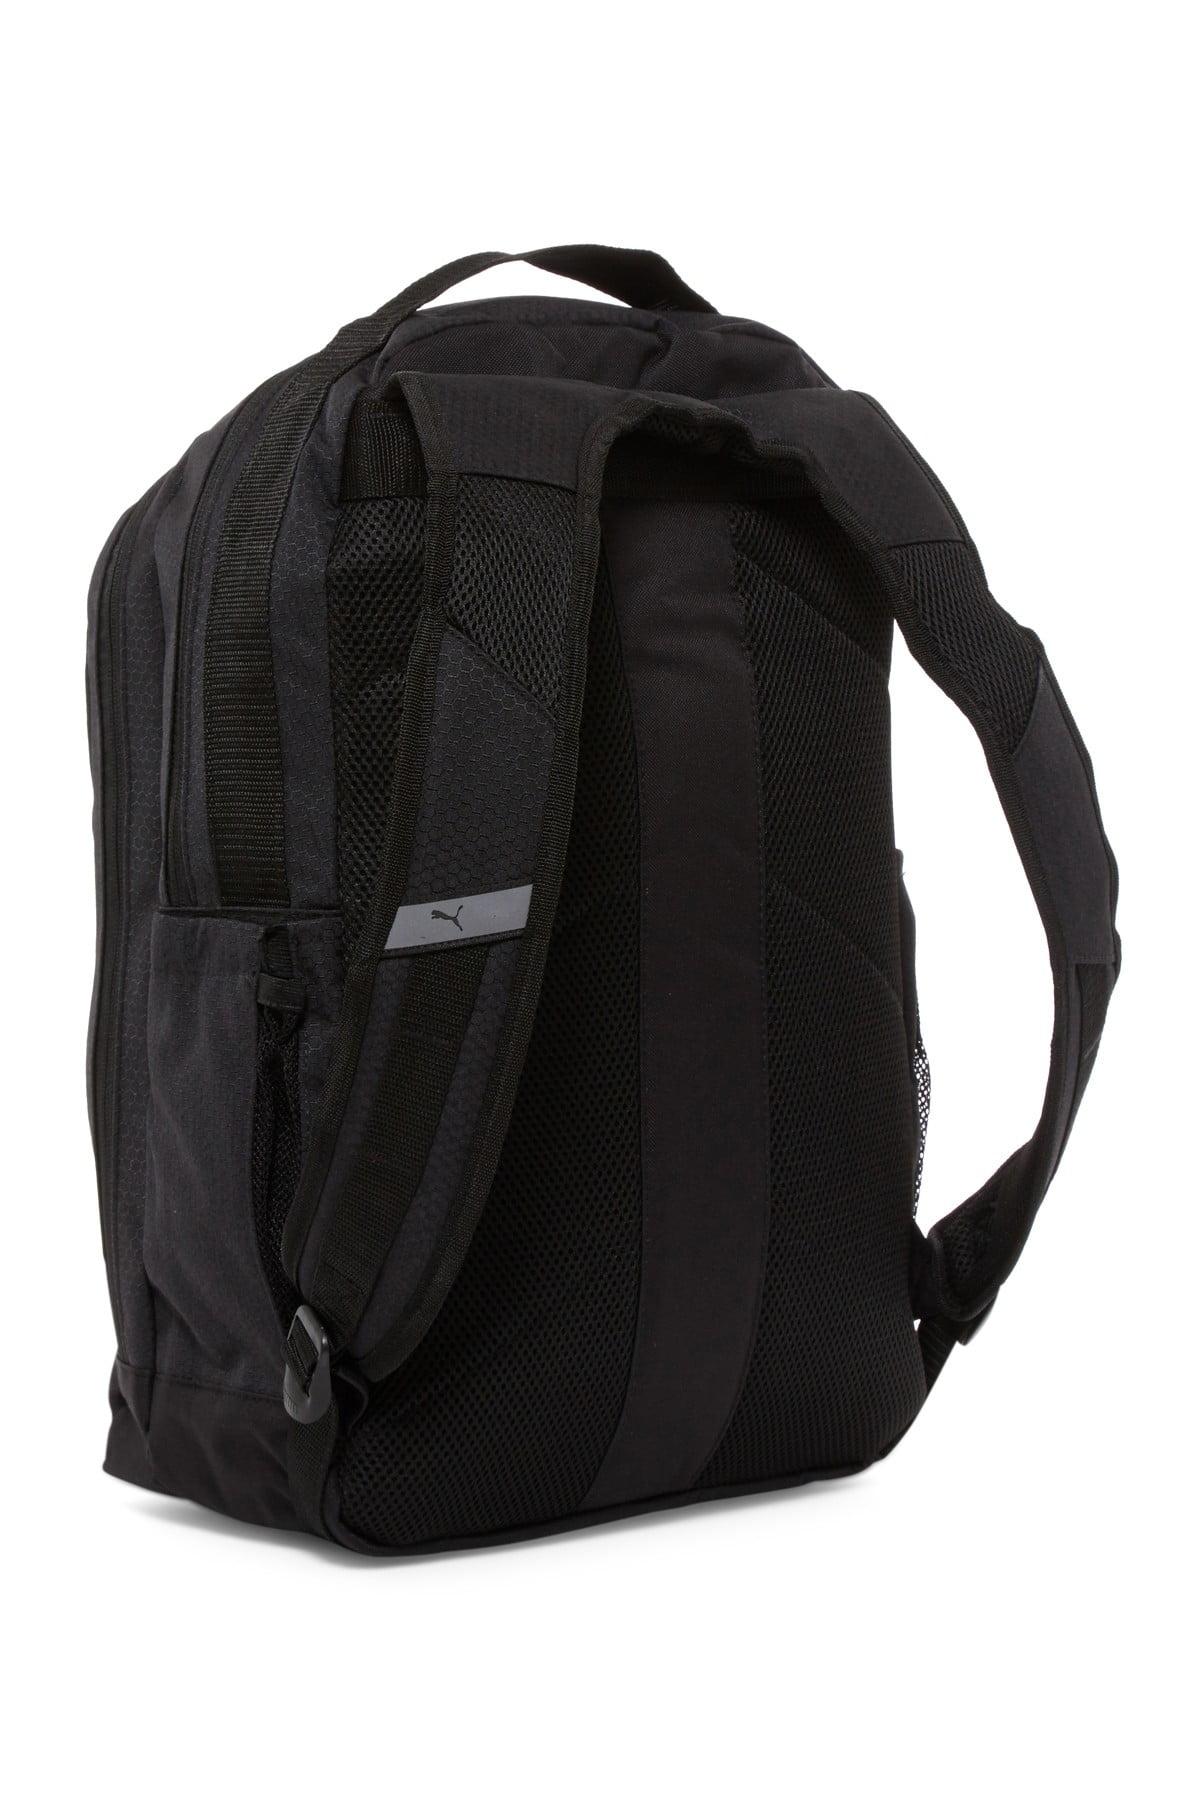 puma evercat equation 3.0 backpack